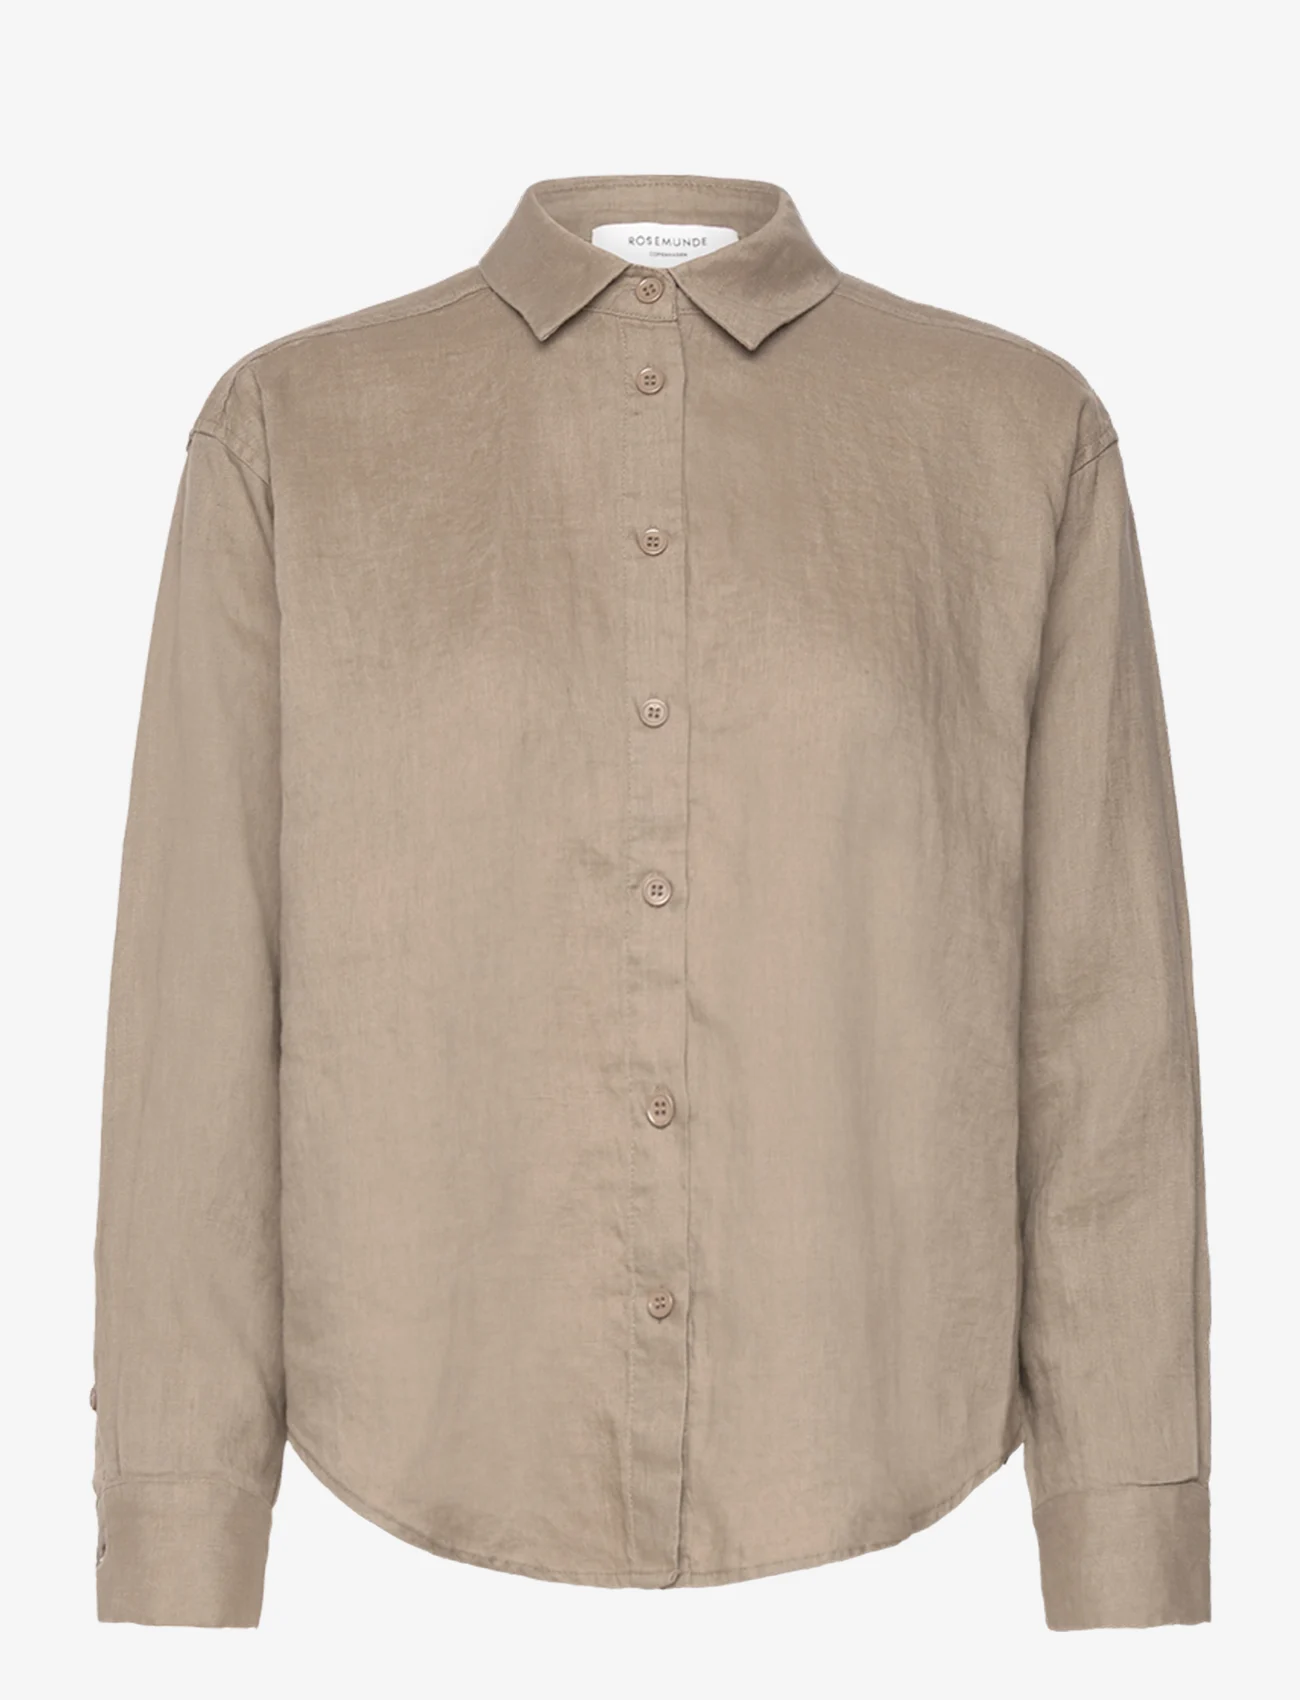 Rosemunde - Linen shirt - linnen overhemden - koala - 0